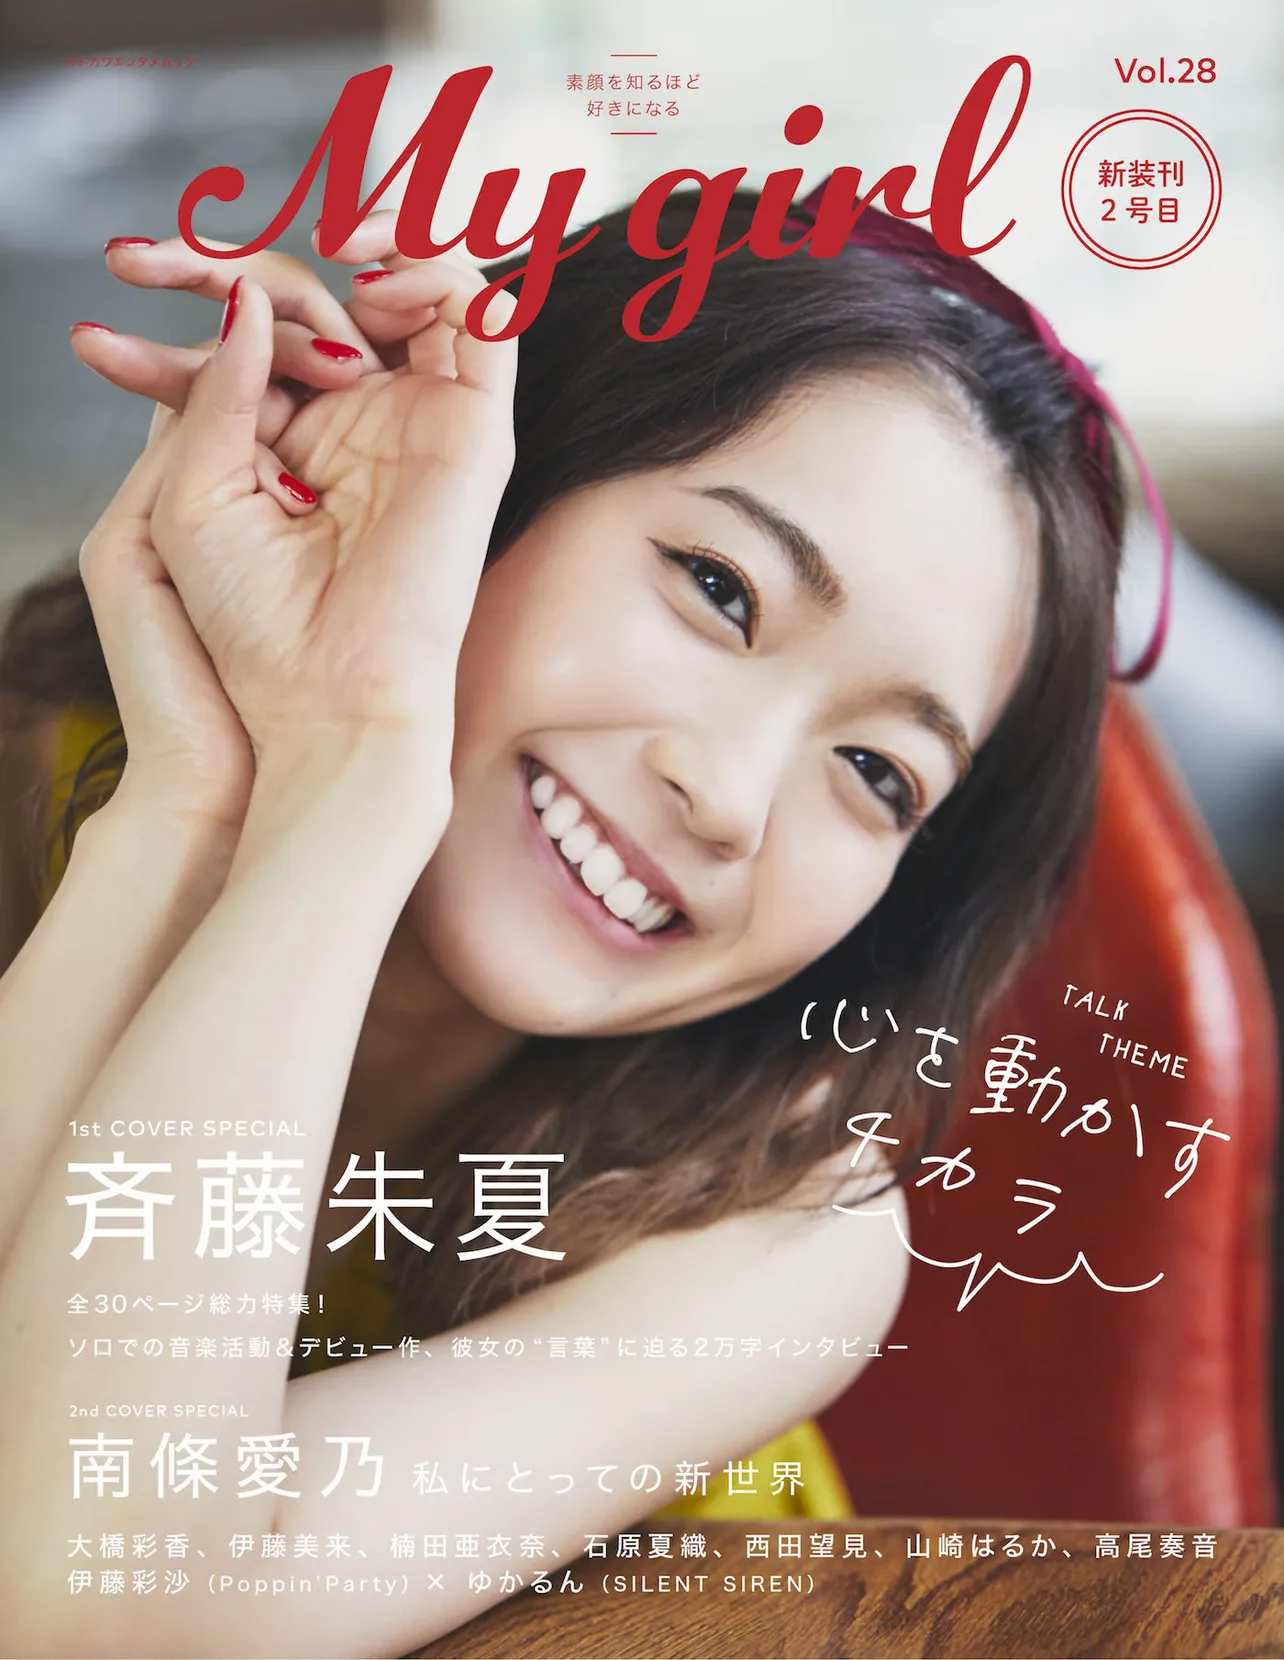 伊藤美来が登場しているガールズビジュアルブック「My Girl vol.28」